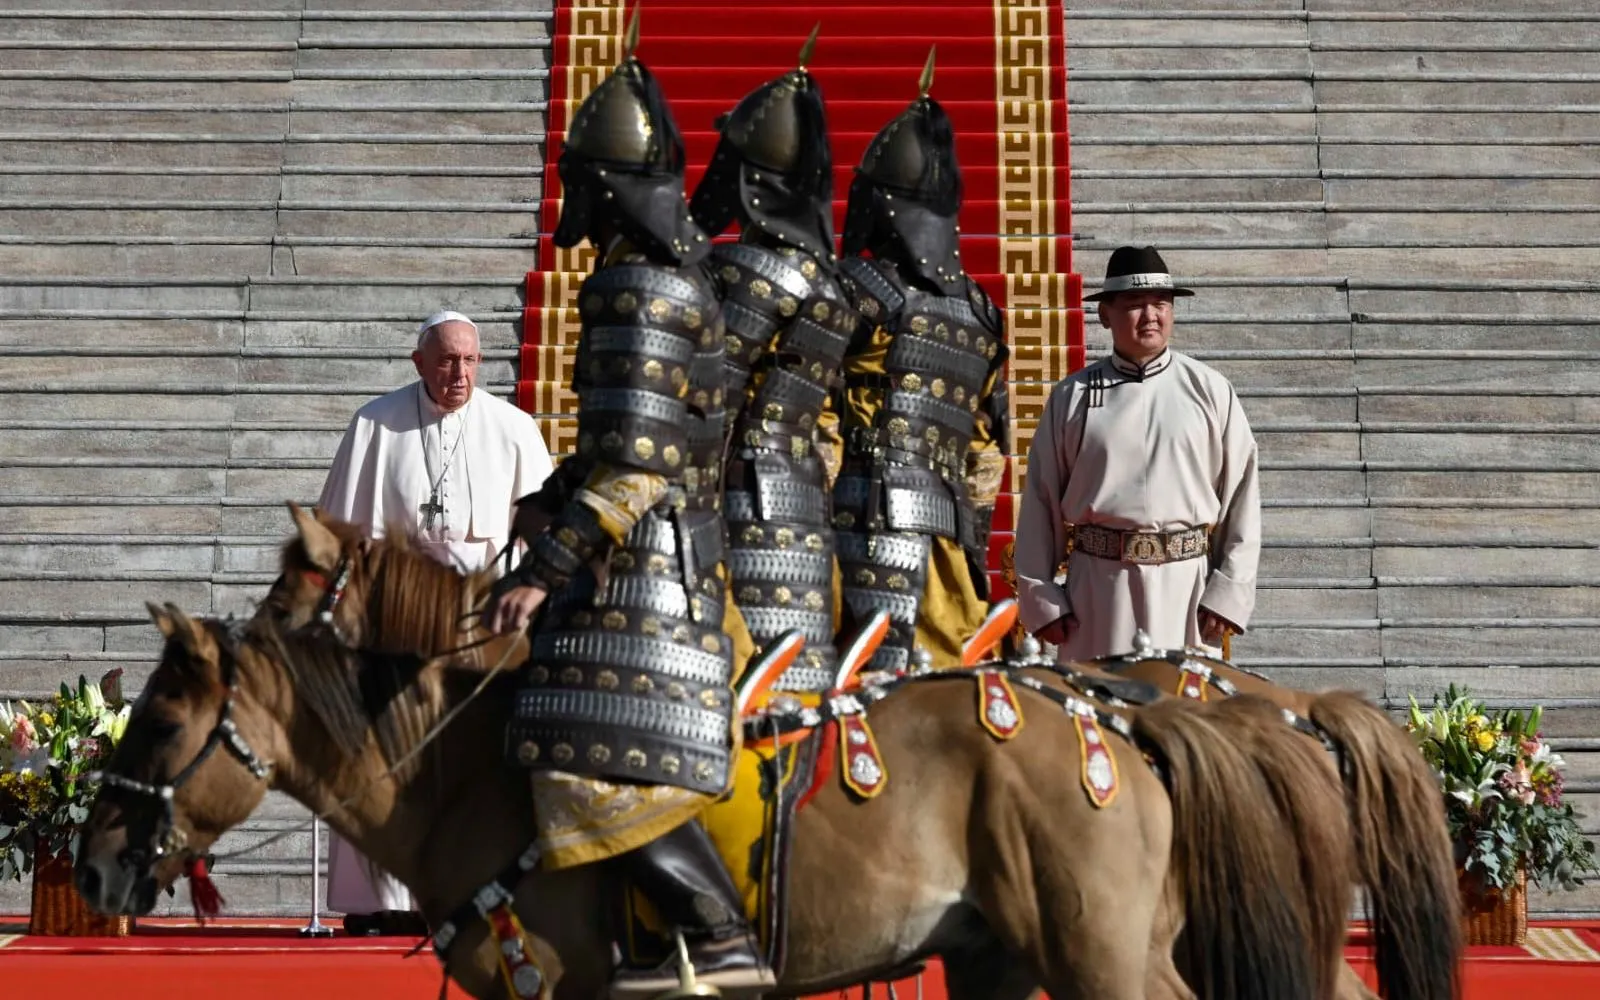 El Papa Francisco junto al presidente de Mongolia, Ukhnaagiin Khürelsükh, en ceremonia de bienvenida en la plaza Sükhbaatar.?w=200&h=150